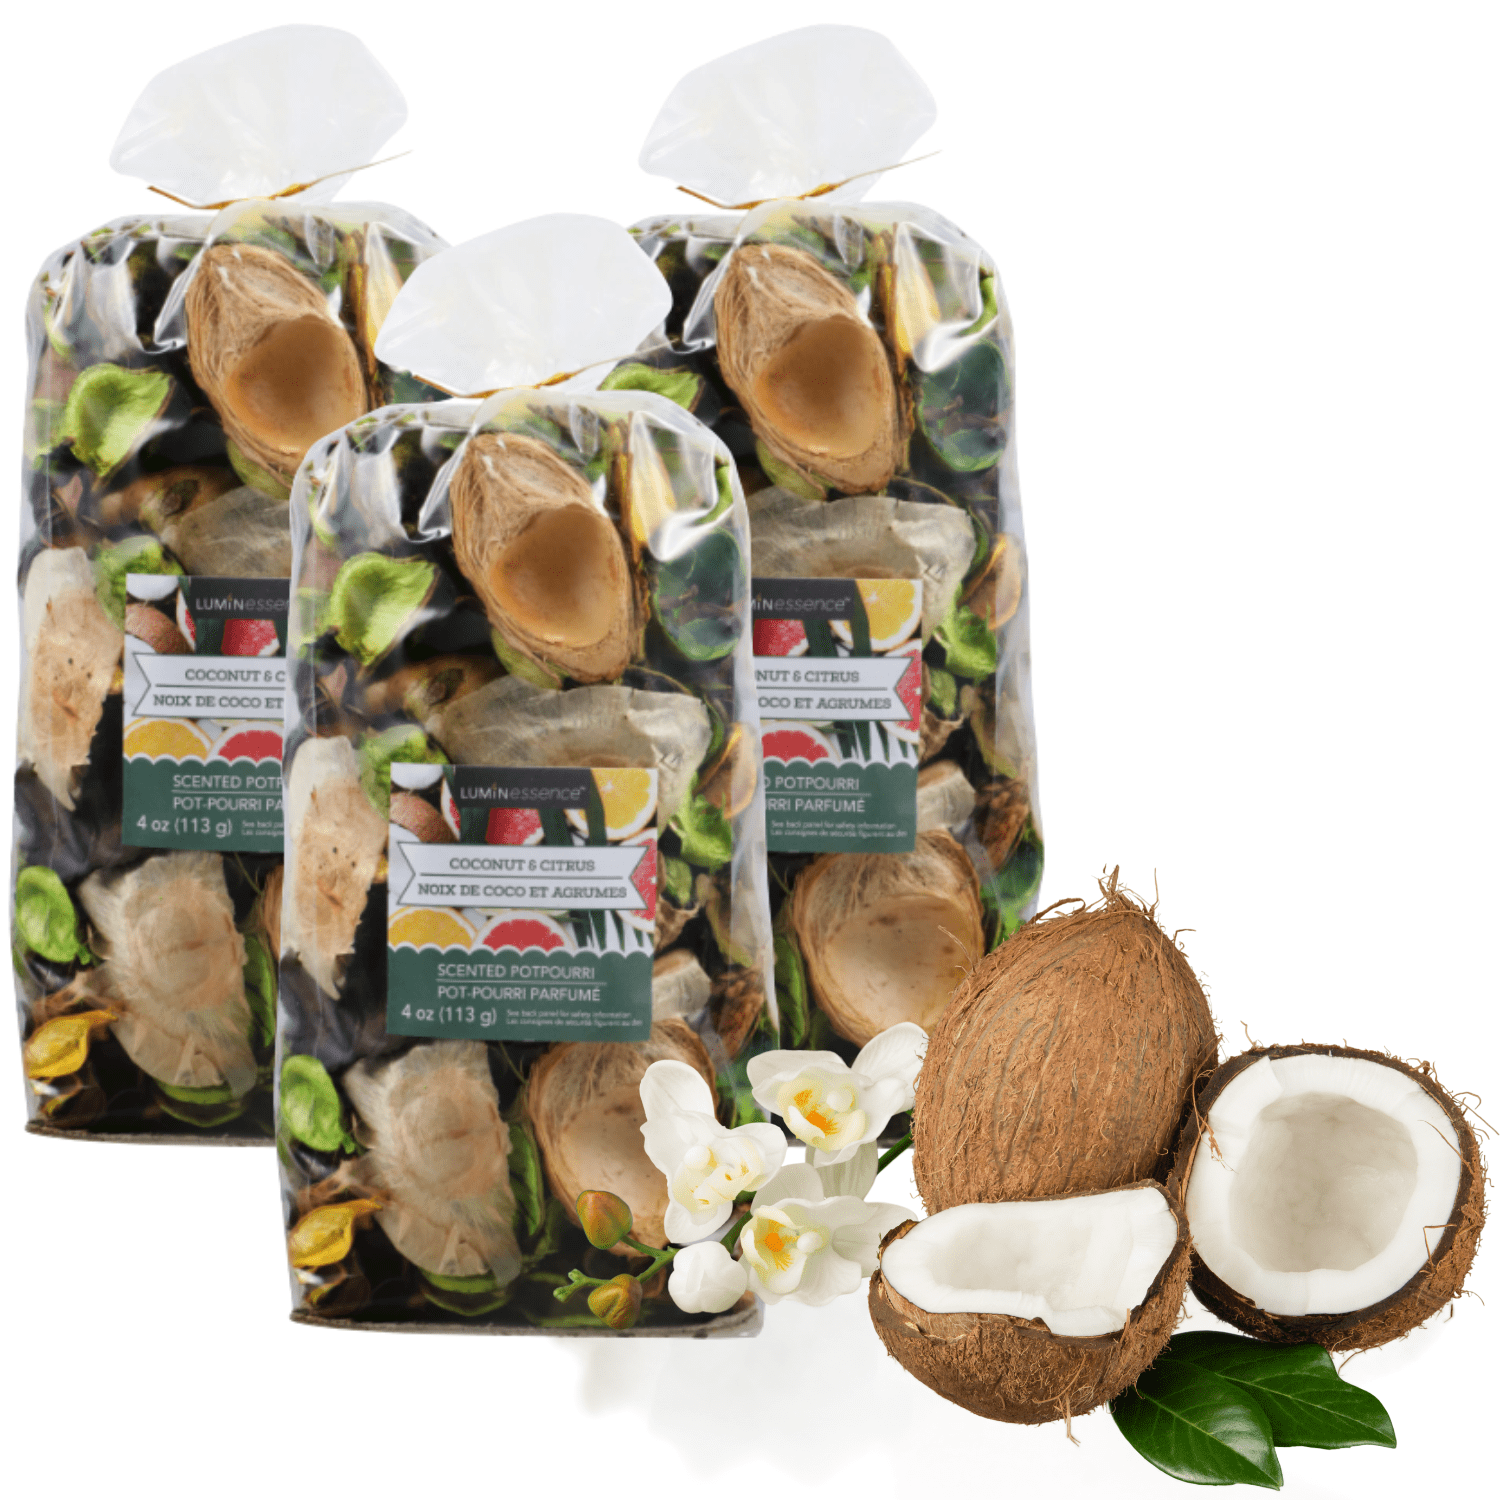 Potpourri Bags Coconut & Citrus - 3 Pack - Scented Potpourri, 4 oz. Bags 